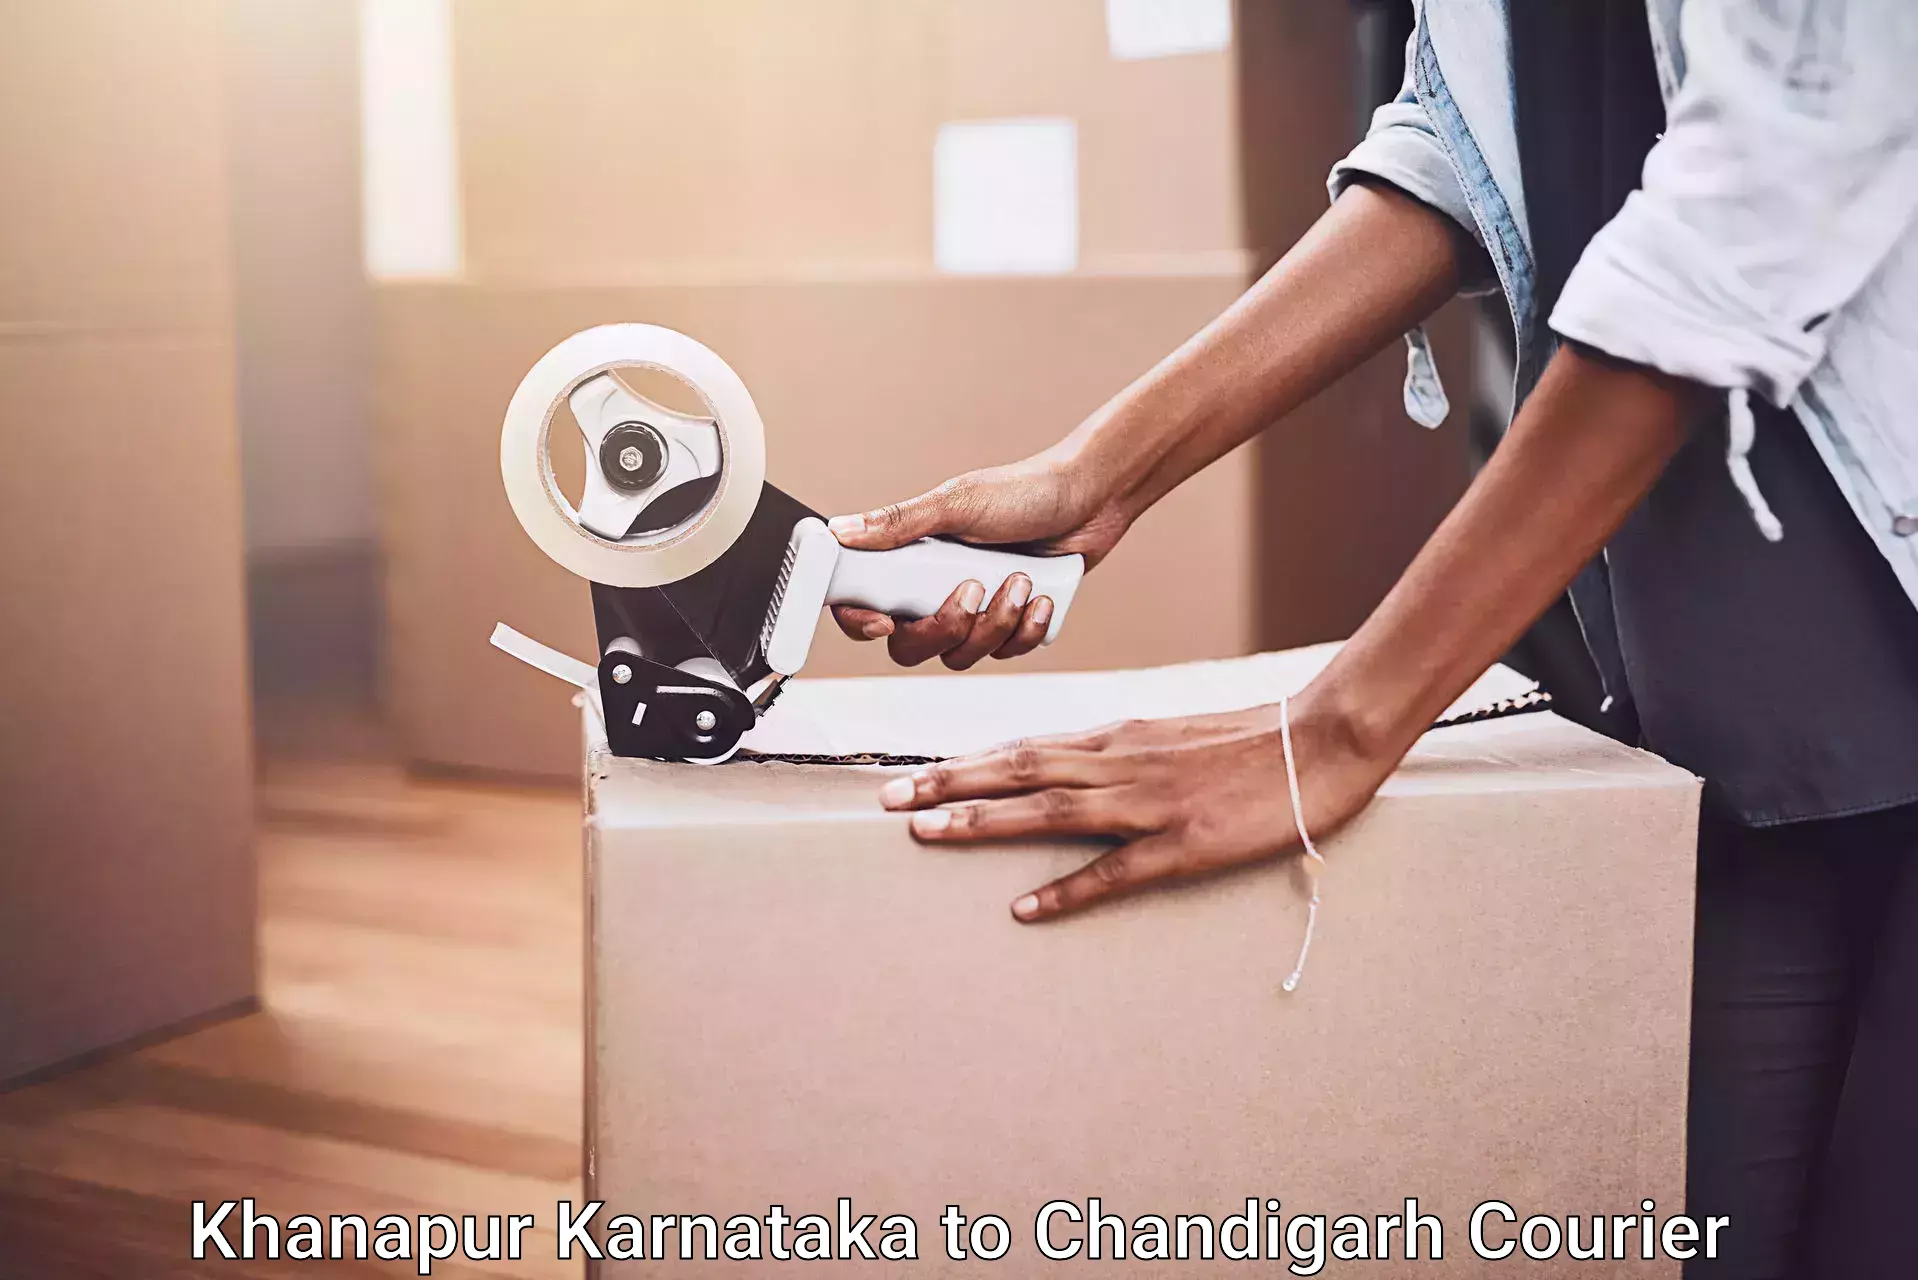 Hassle-free relocation in Khanapur Karnataka to Chandigarh